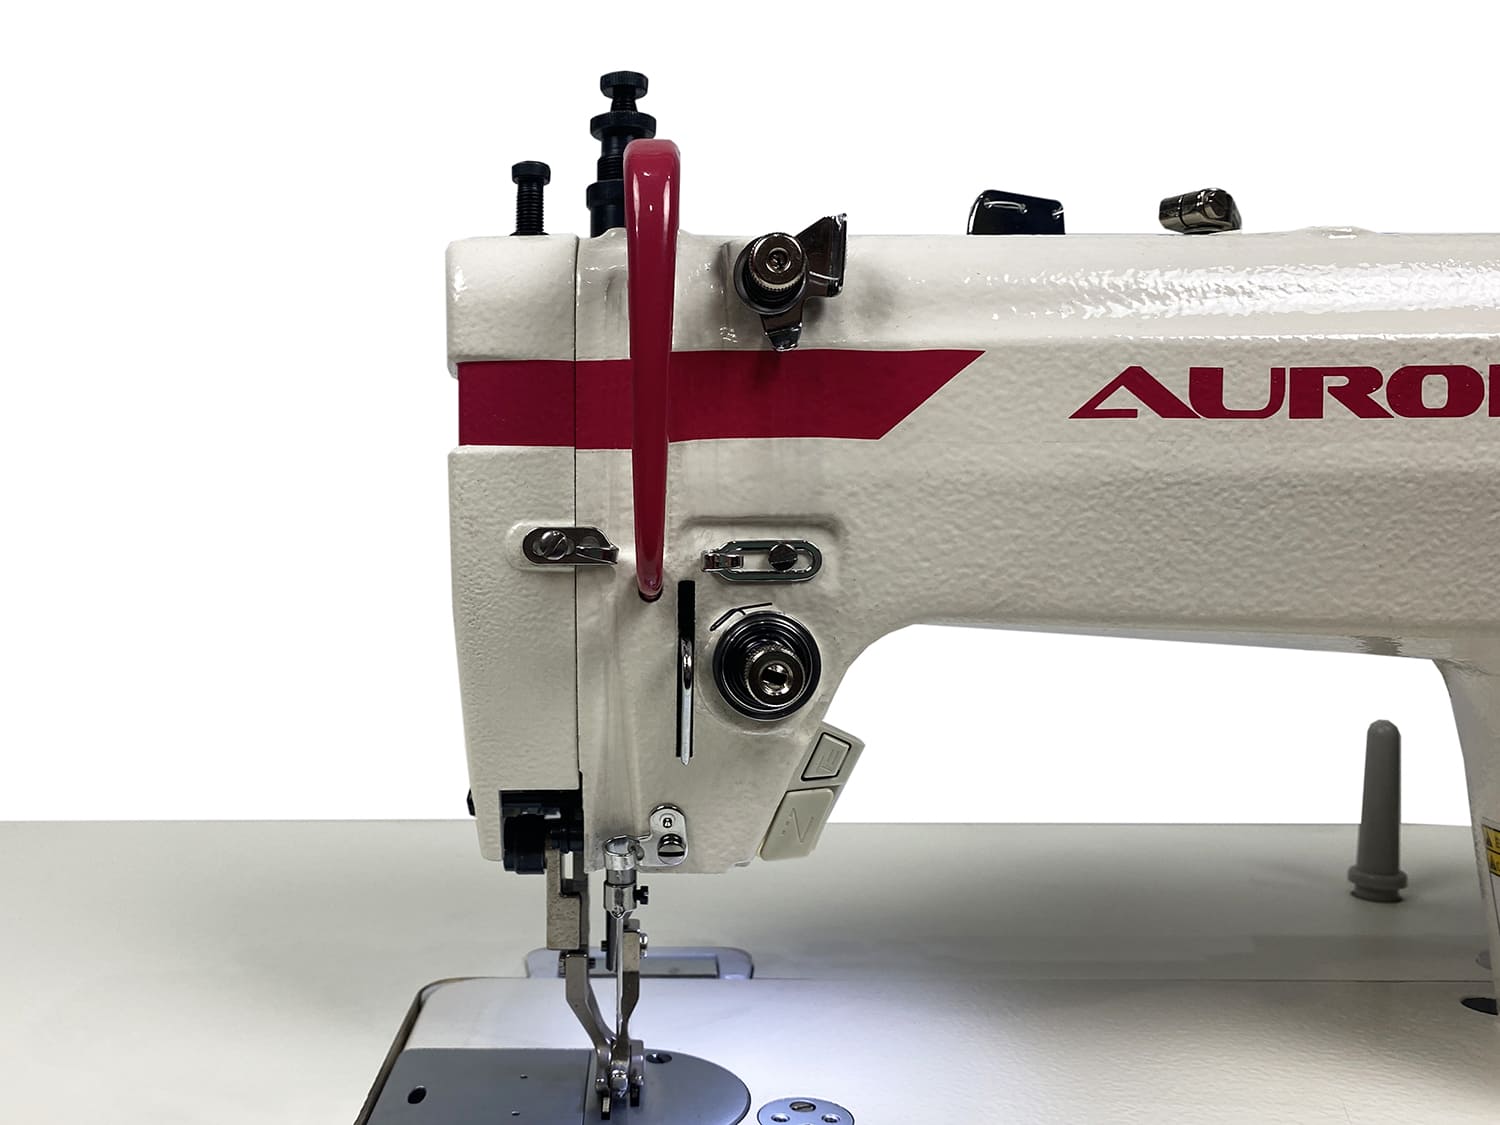 Прямострочная промышленная швейная машина с шагающей лапкой Aurora H3-L (прямой привод) 